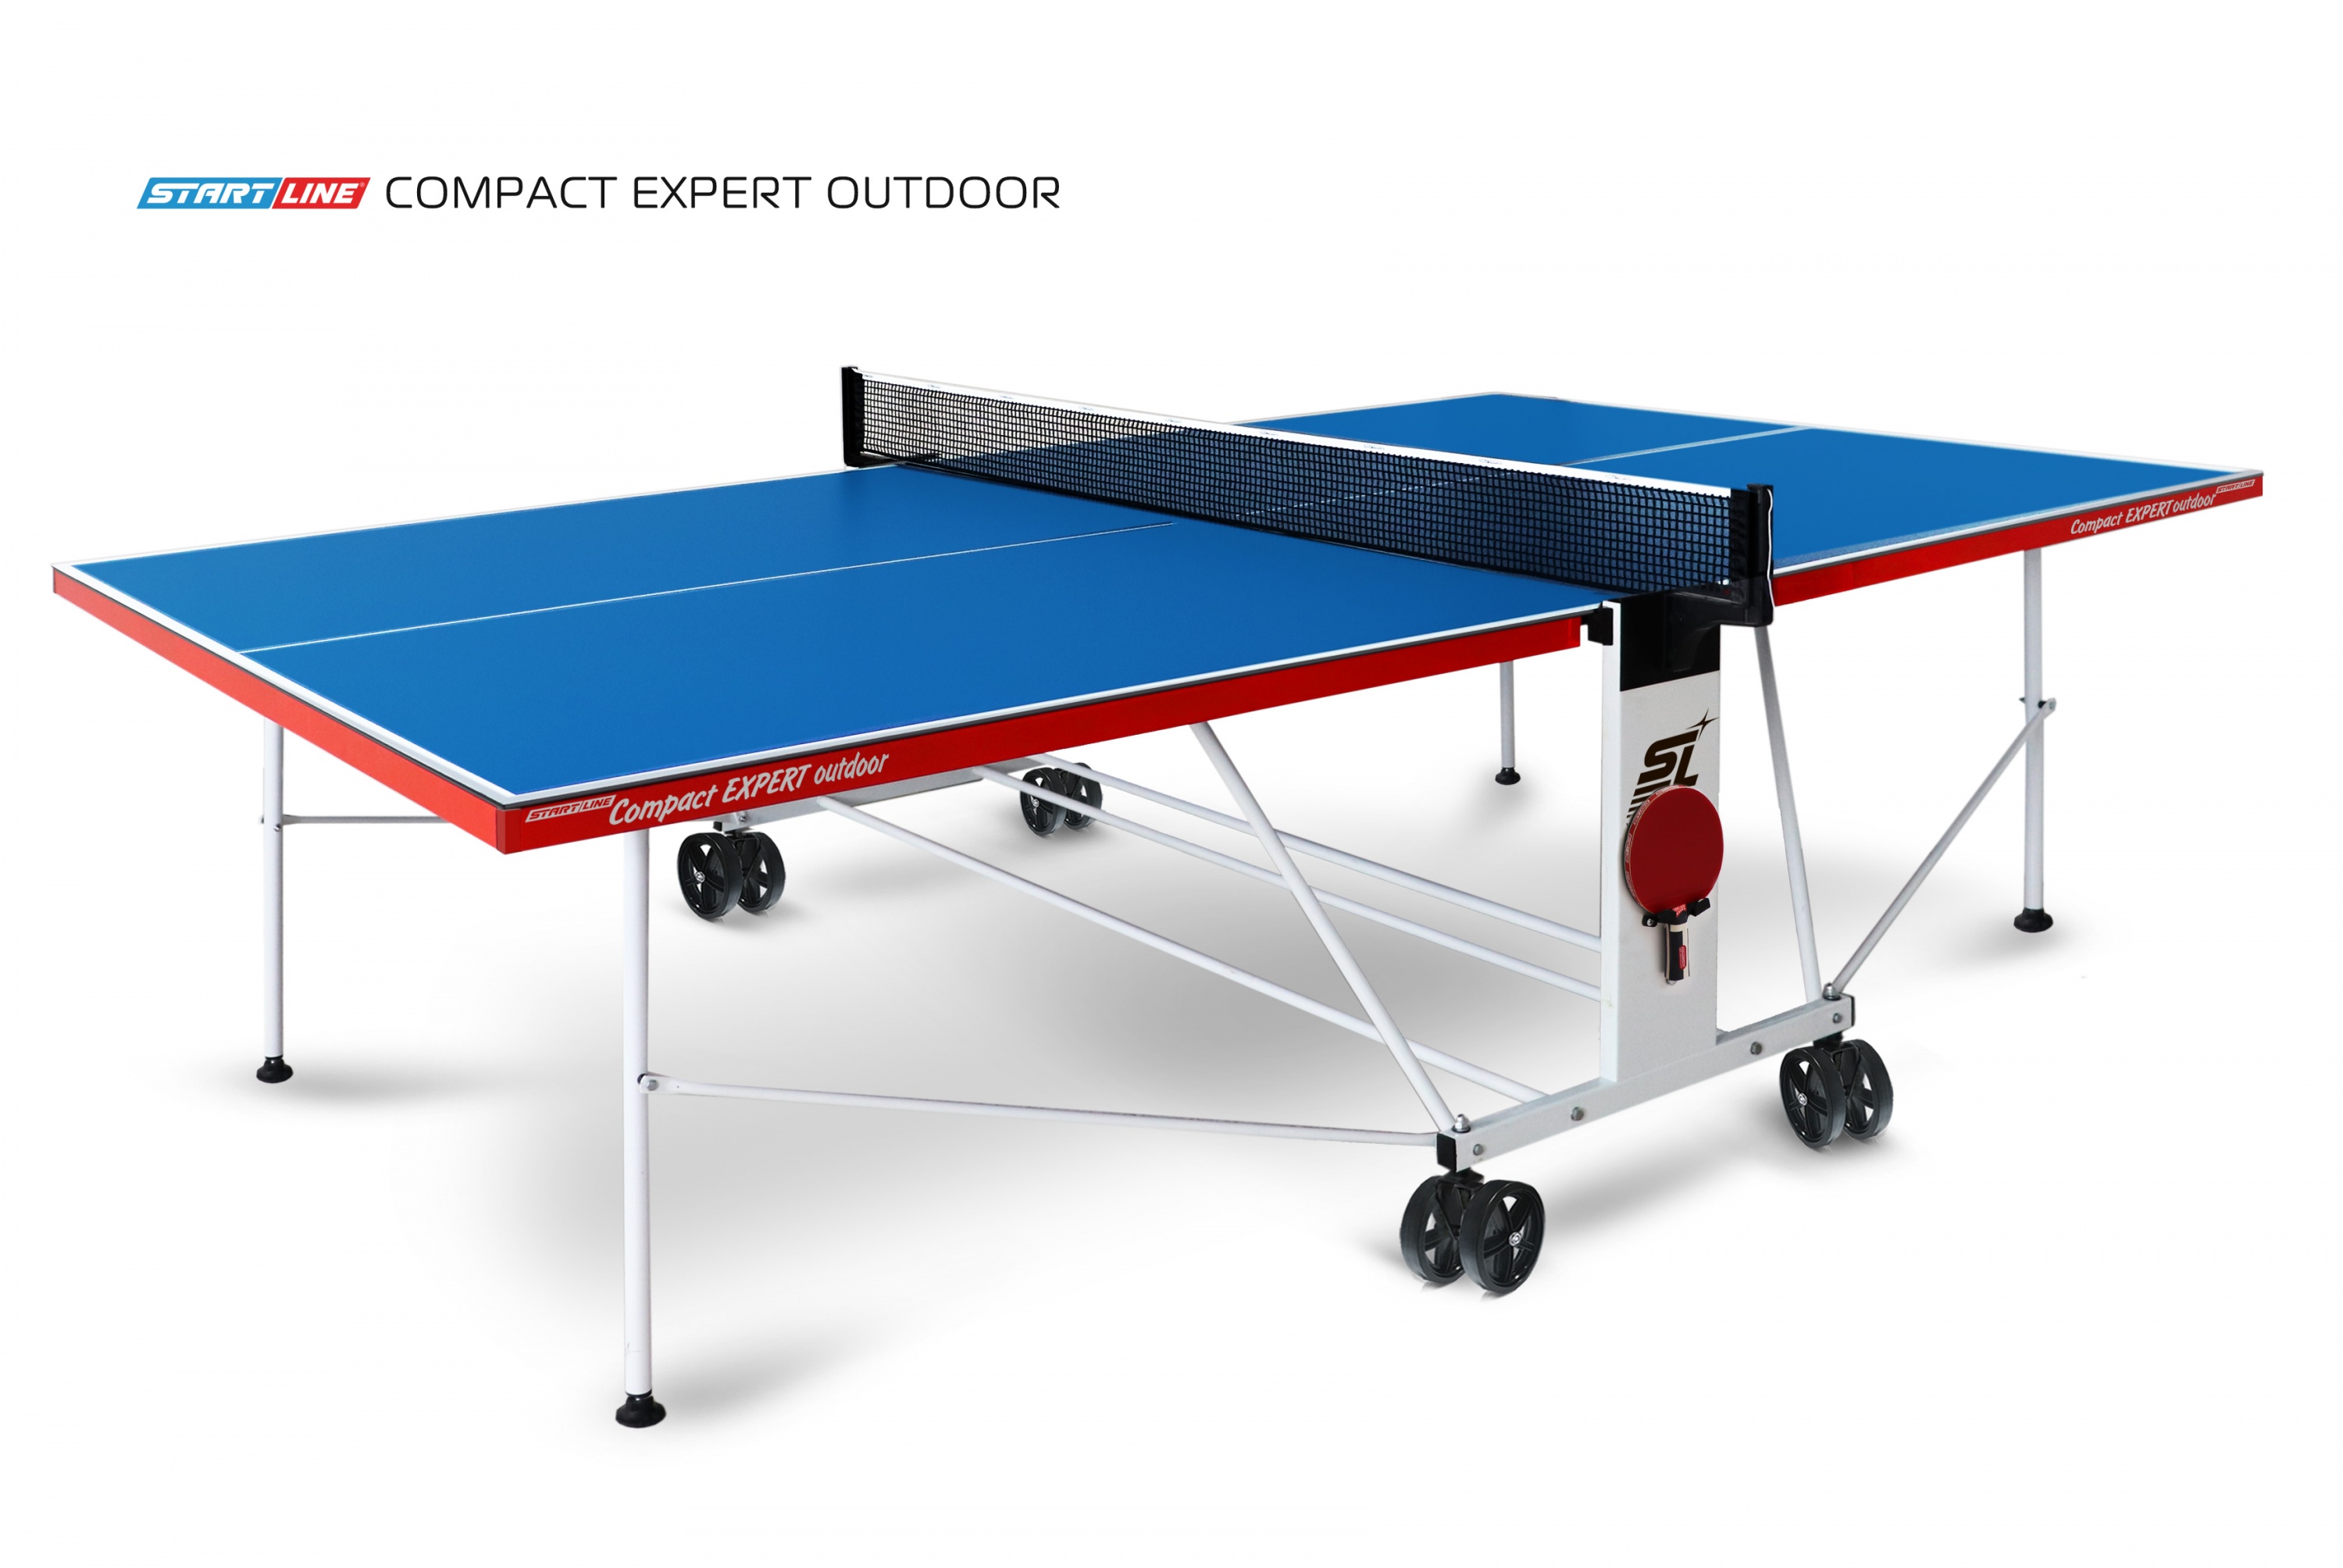 Теннисный стол Compact Expert Outdoor 4 blue - компактная модель теннисного стола для помещений. Столешница 4 мм. Уникальный механизм трансформации. 